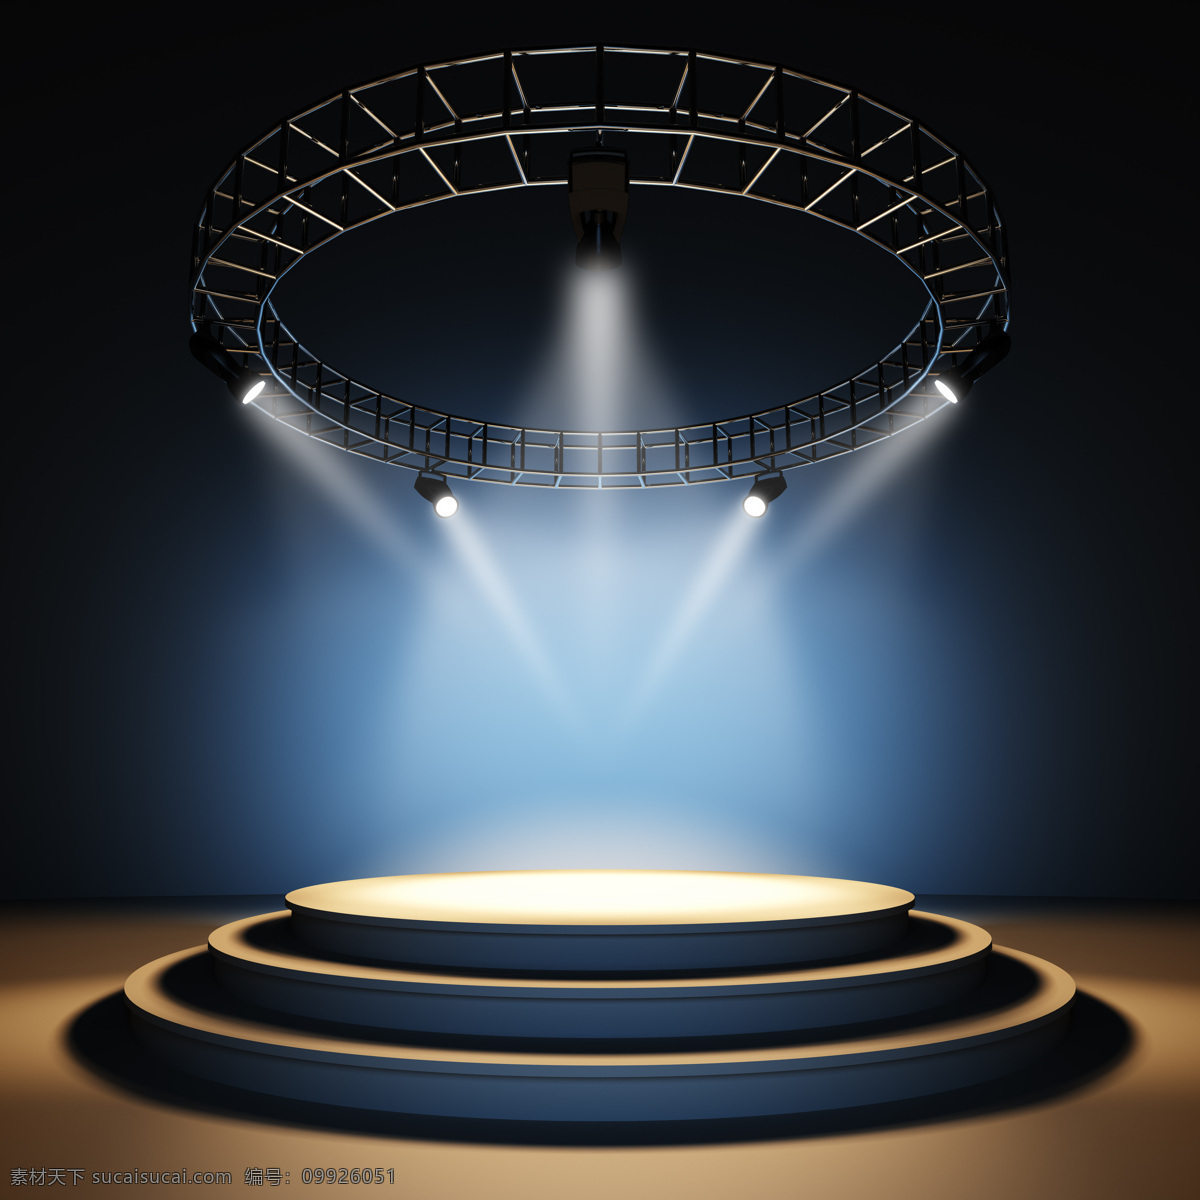 圆形 舞台灯光 效果 圆形舞台 探照灯 舞台灯光效果 舞台背景 舞台设计 其他类别 生活百科 黑色